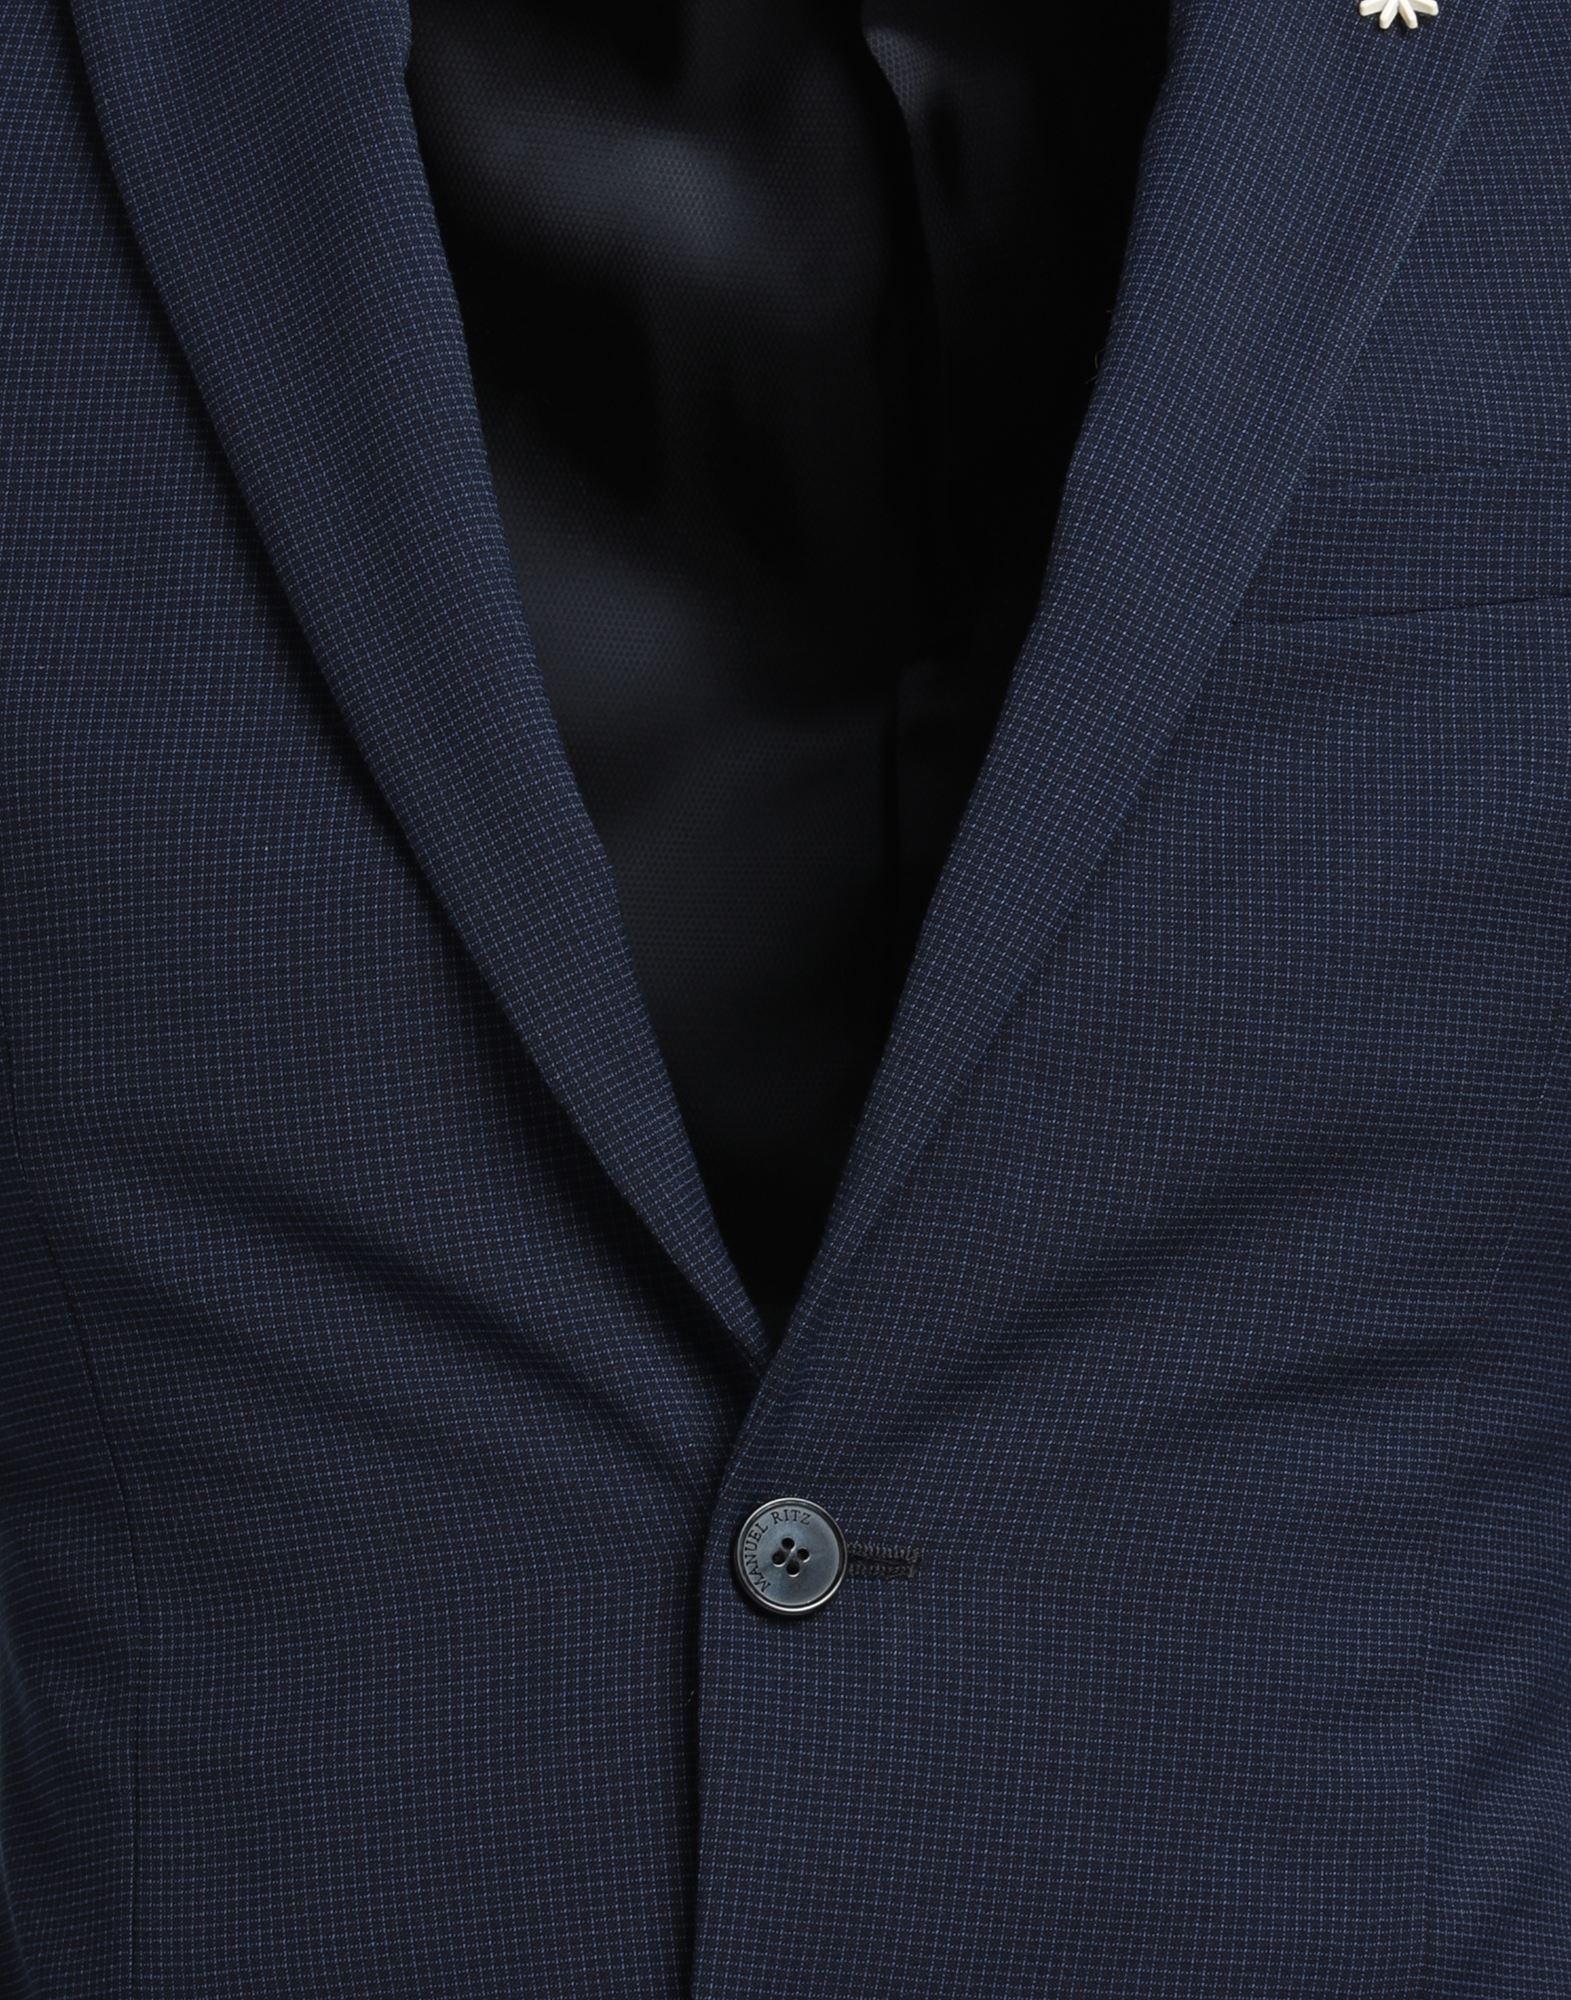 AbitoManuel Ritz in Materiale sintetico da Uomo colore Blu Uomo Abbigliamento da Completi da Completi a 2 pezzi 